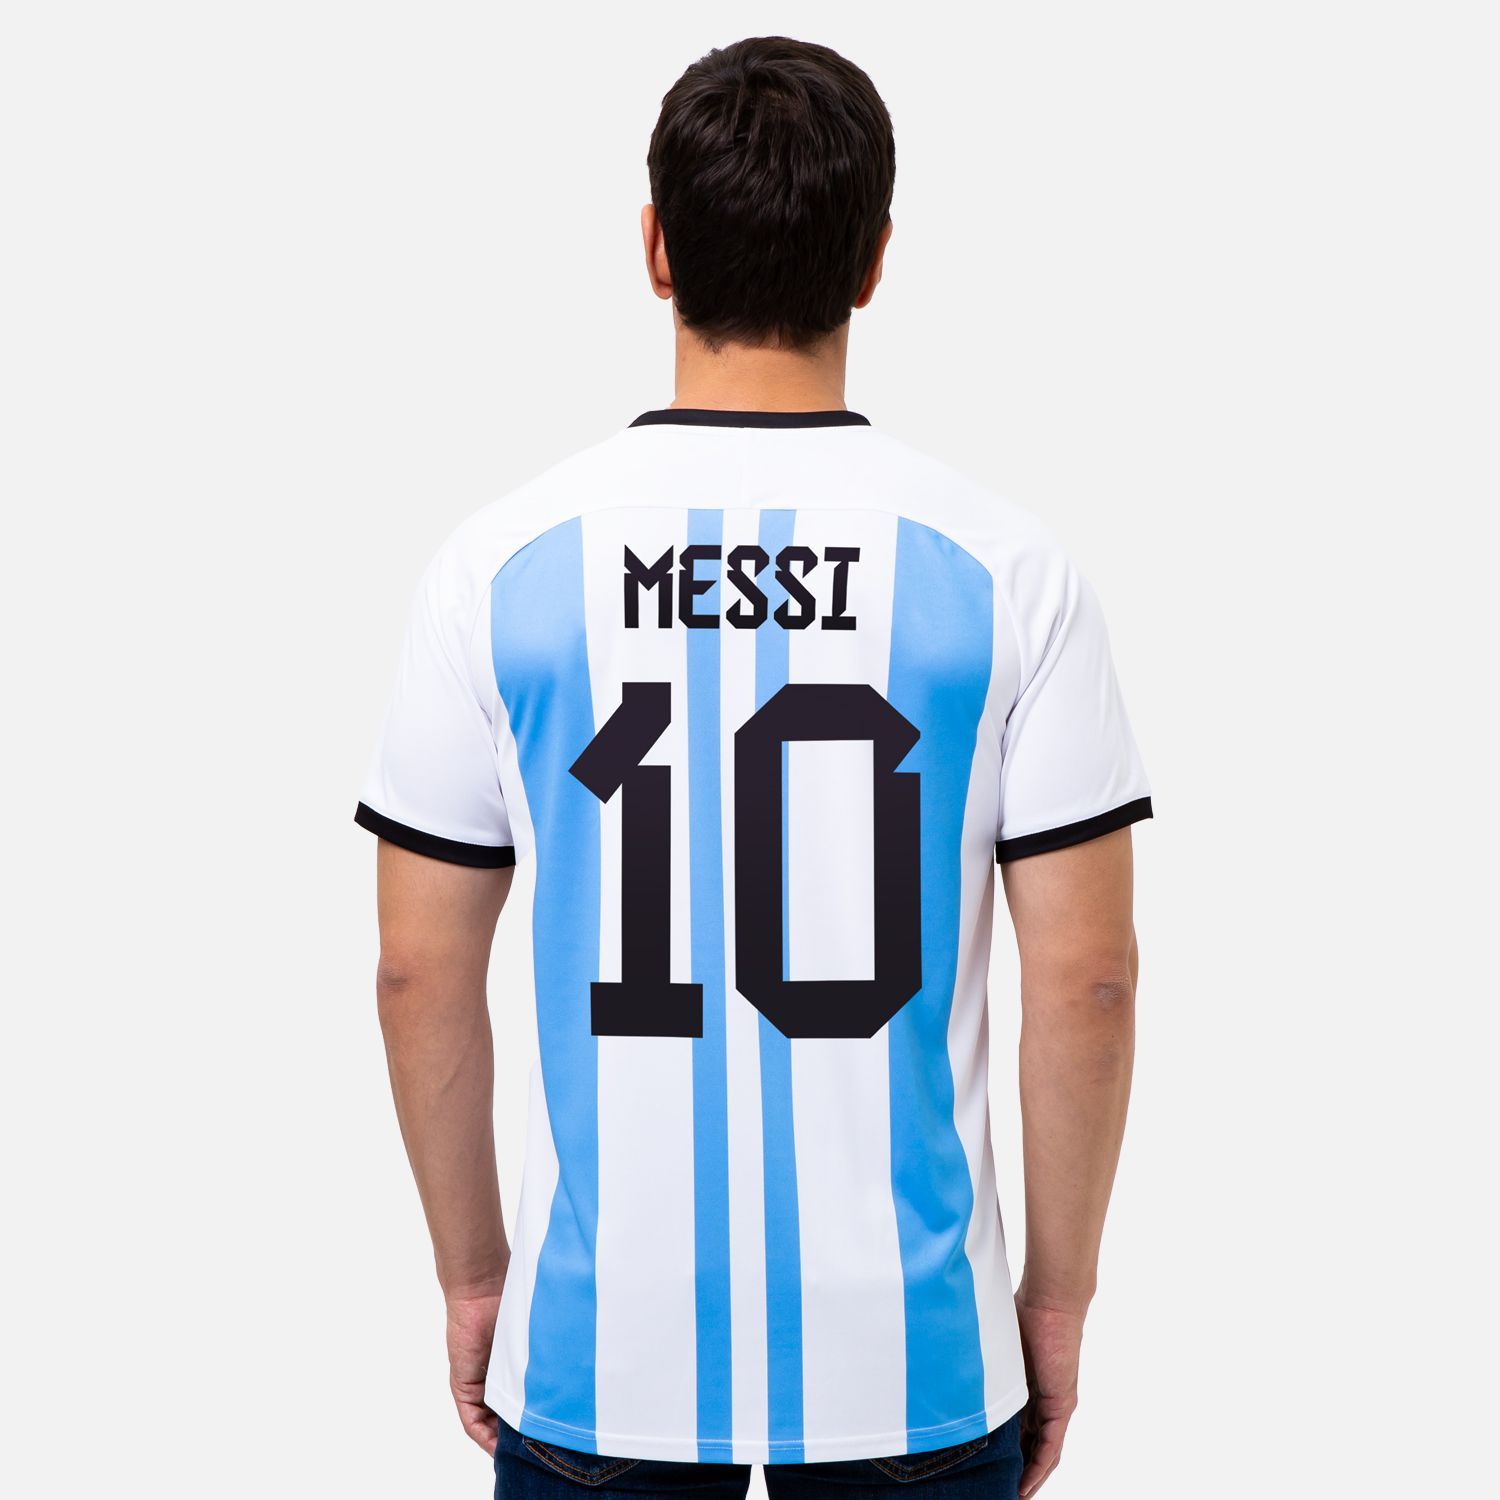 Месси в футболке сборной Аргентины